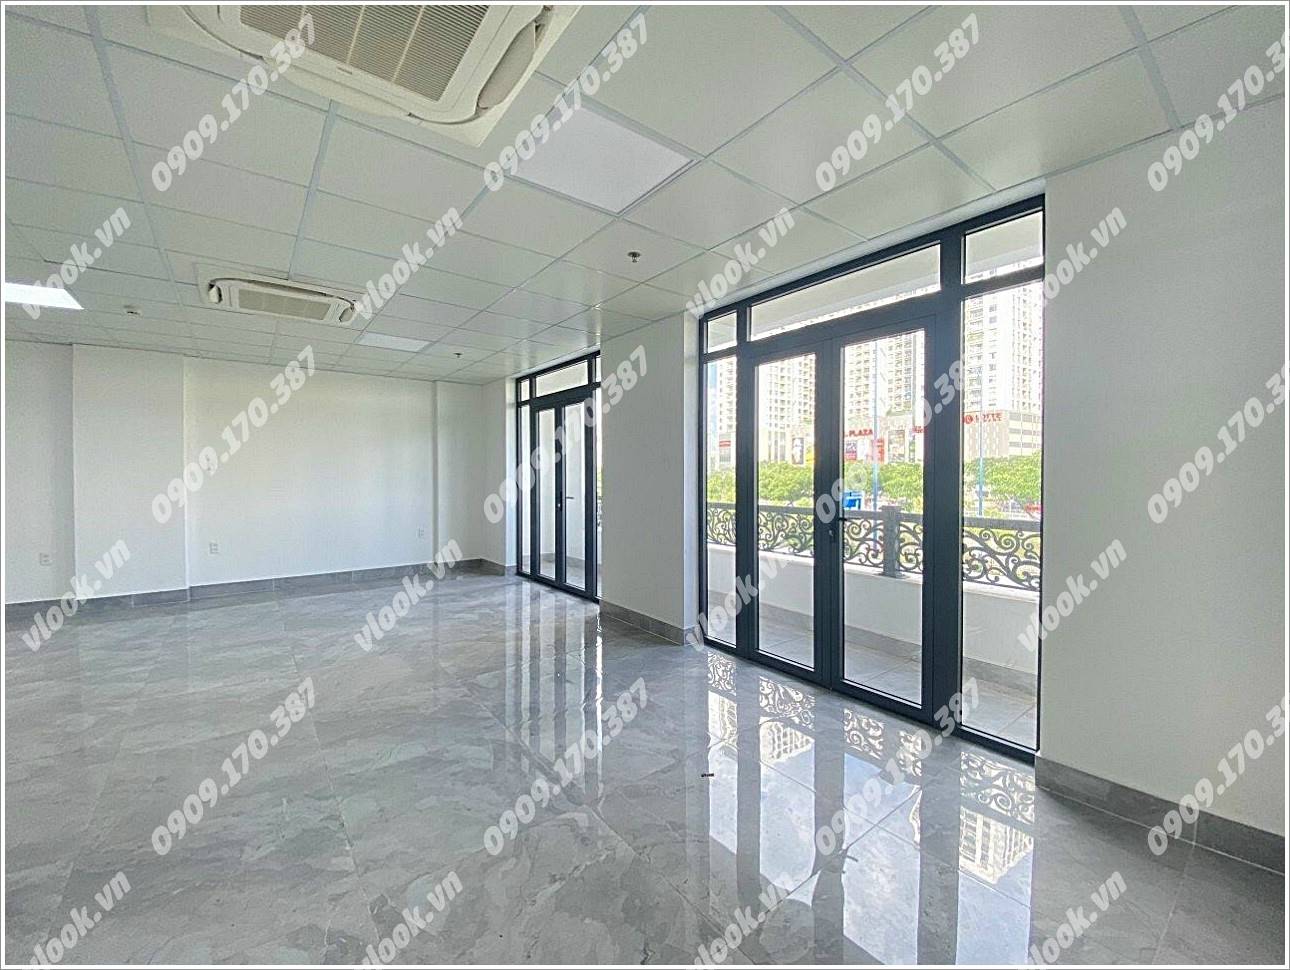 Cao ốc văn phòng cho thuê toà nhà Tín Thành Building, Võ Văn Kiệt, Quận 1, TPHCM - vlook.vn